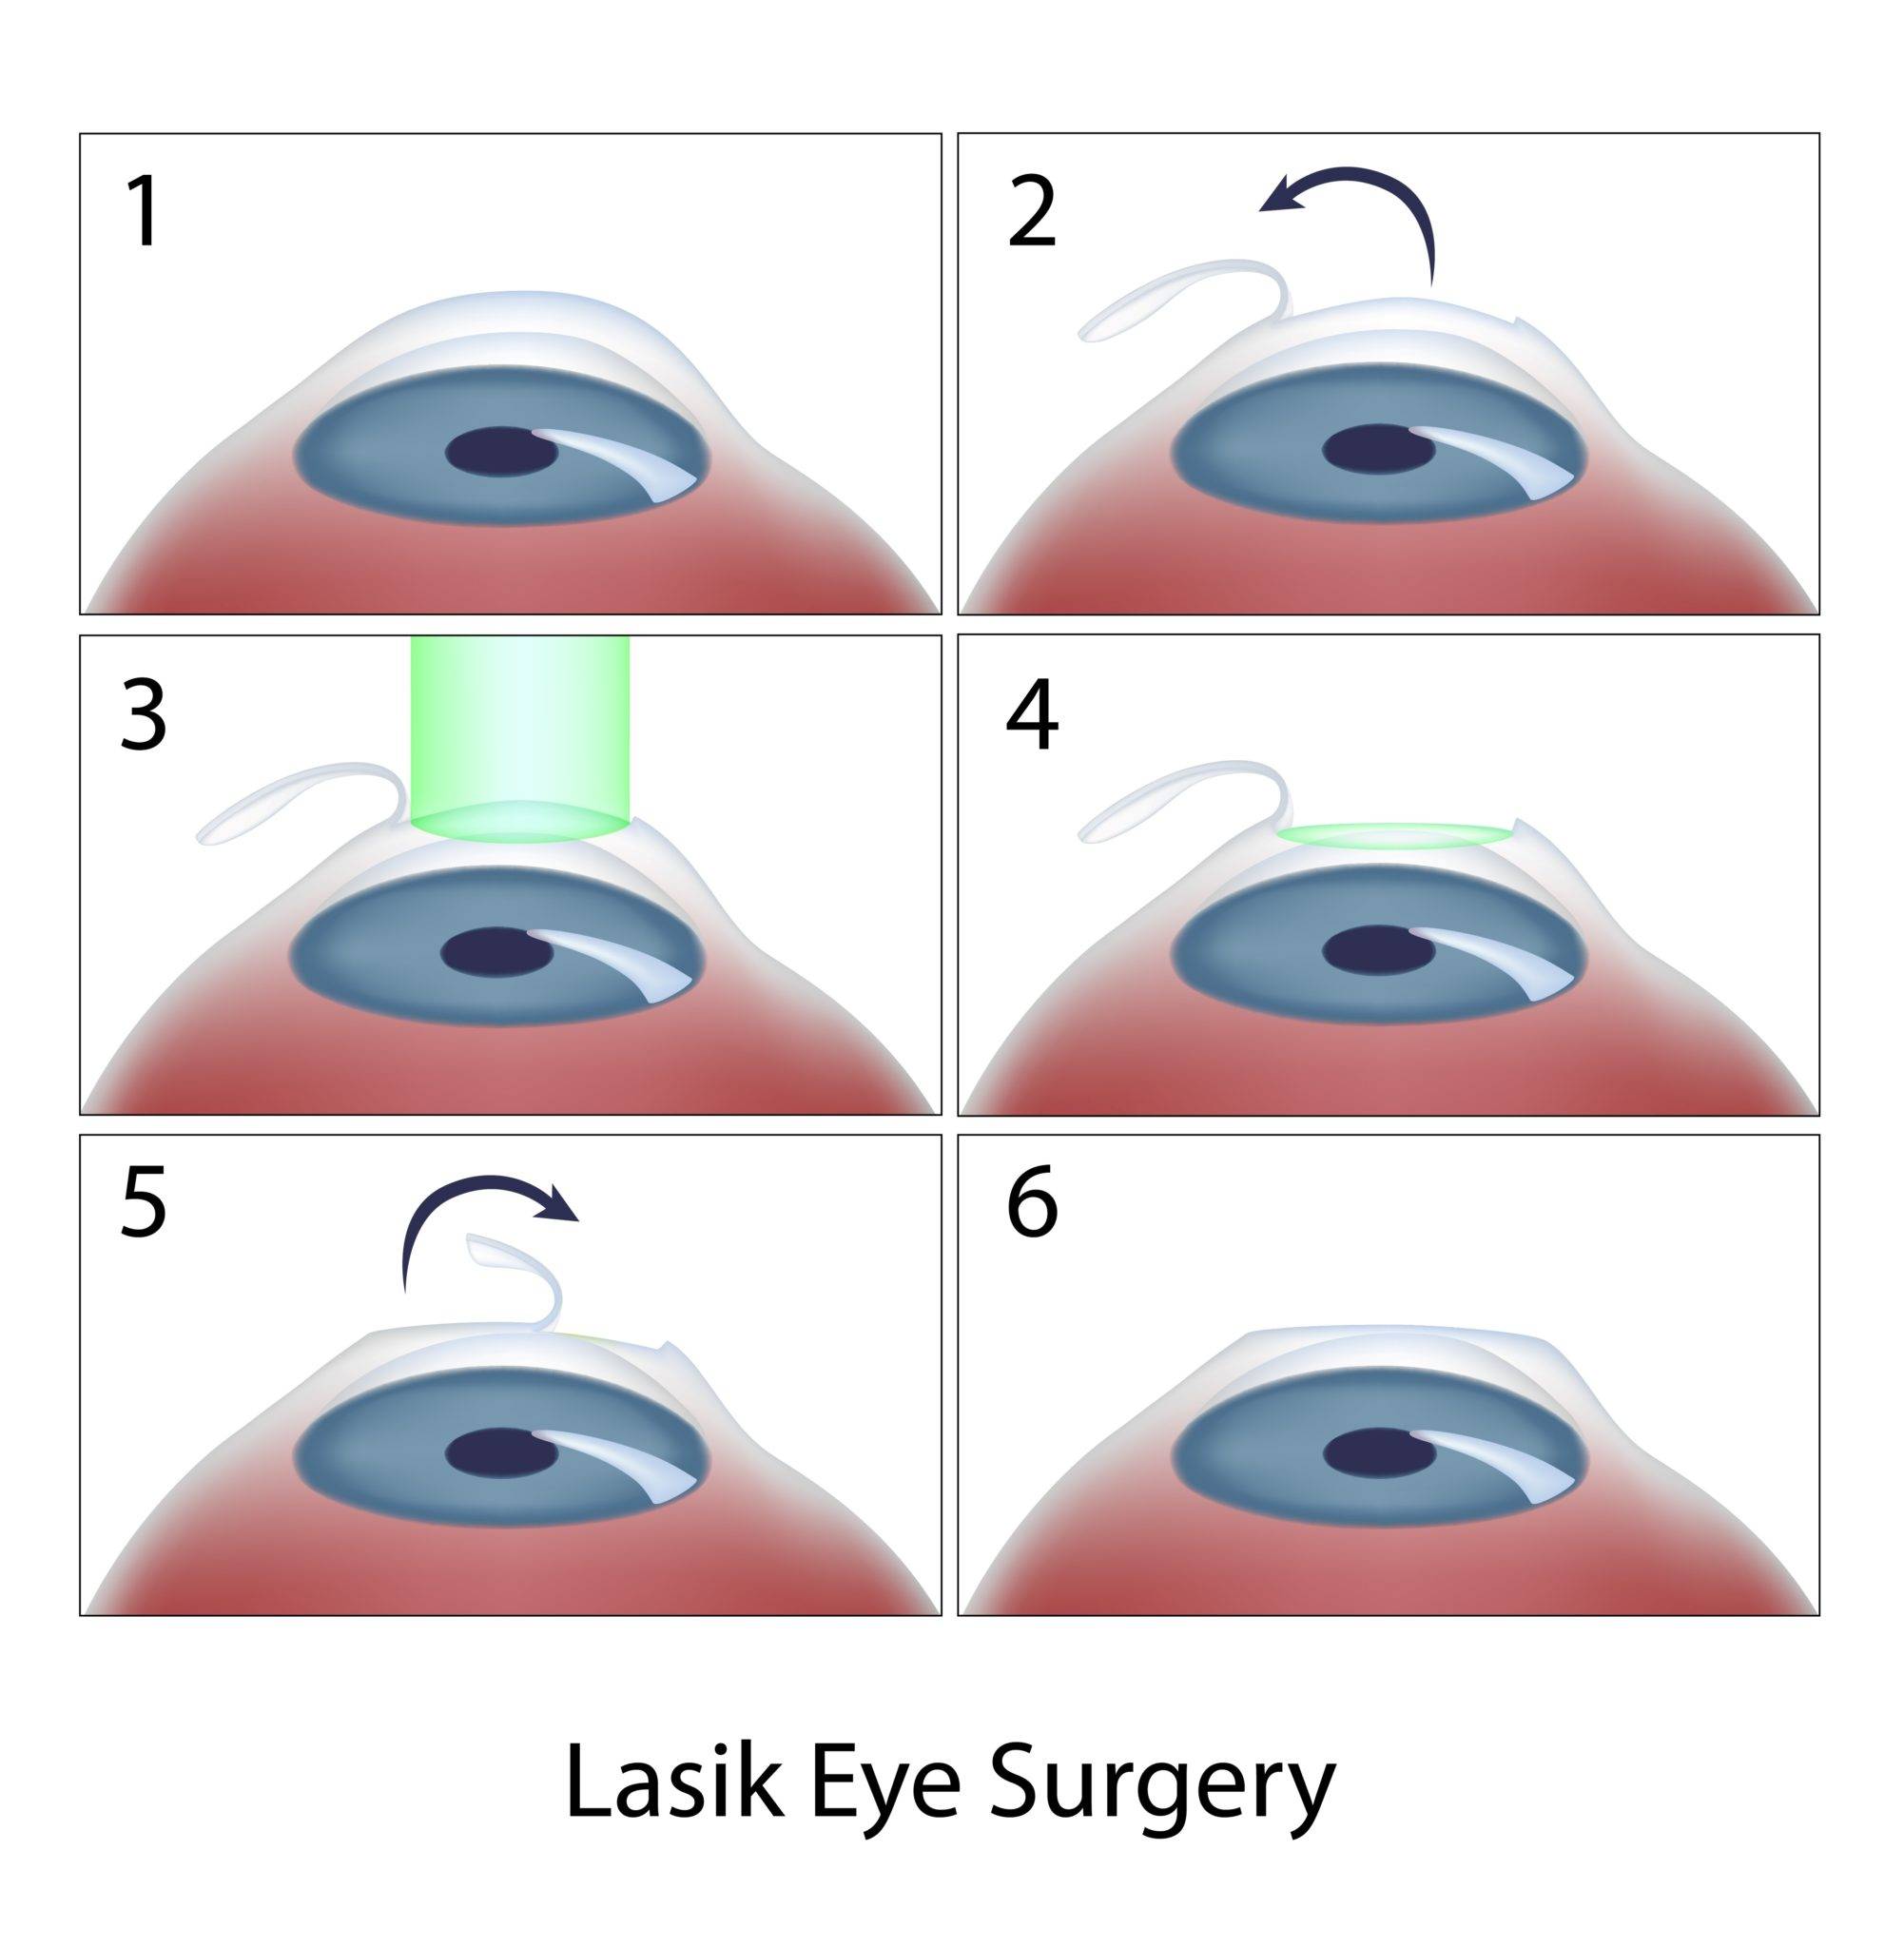 Лазерная коррекция зрения: всё, что нужно знать об операции и её последствиях - лайфхакер